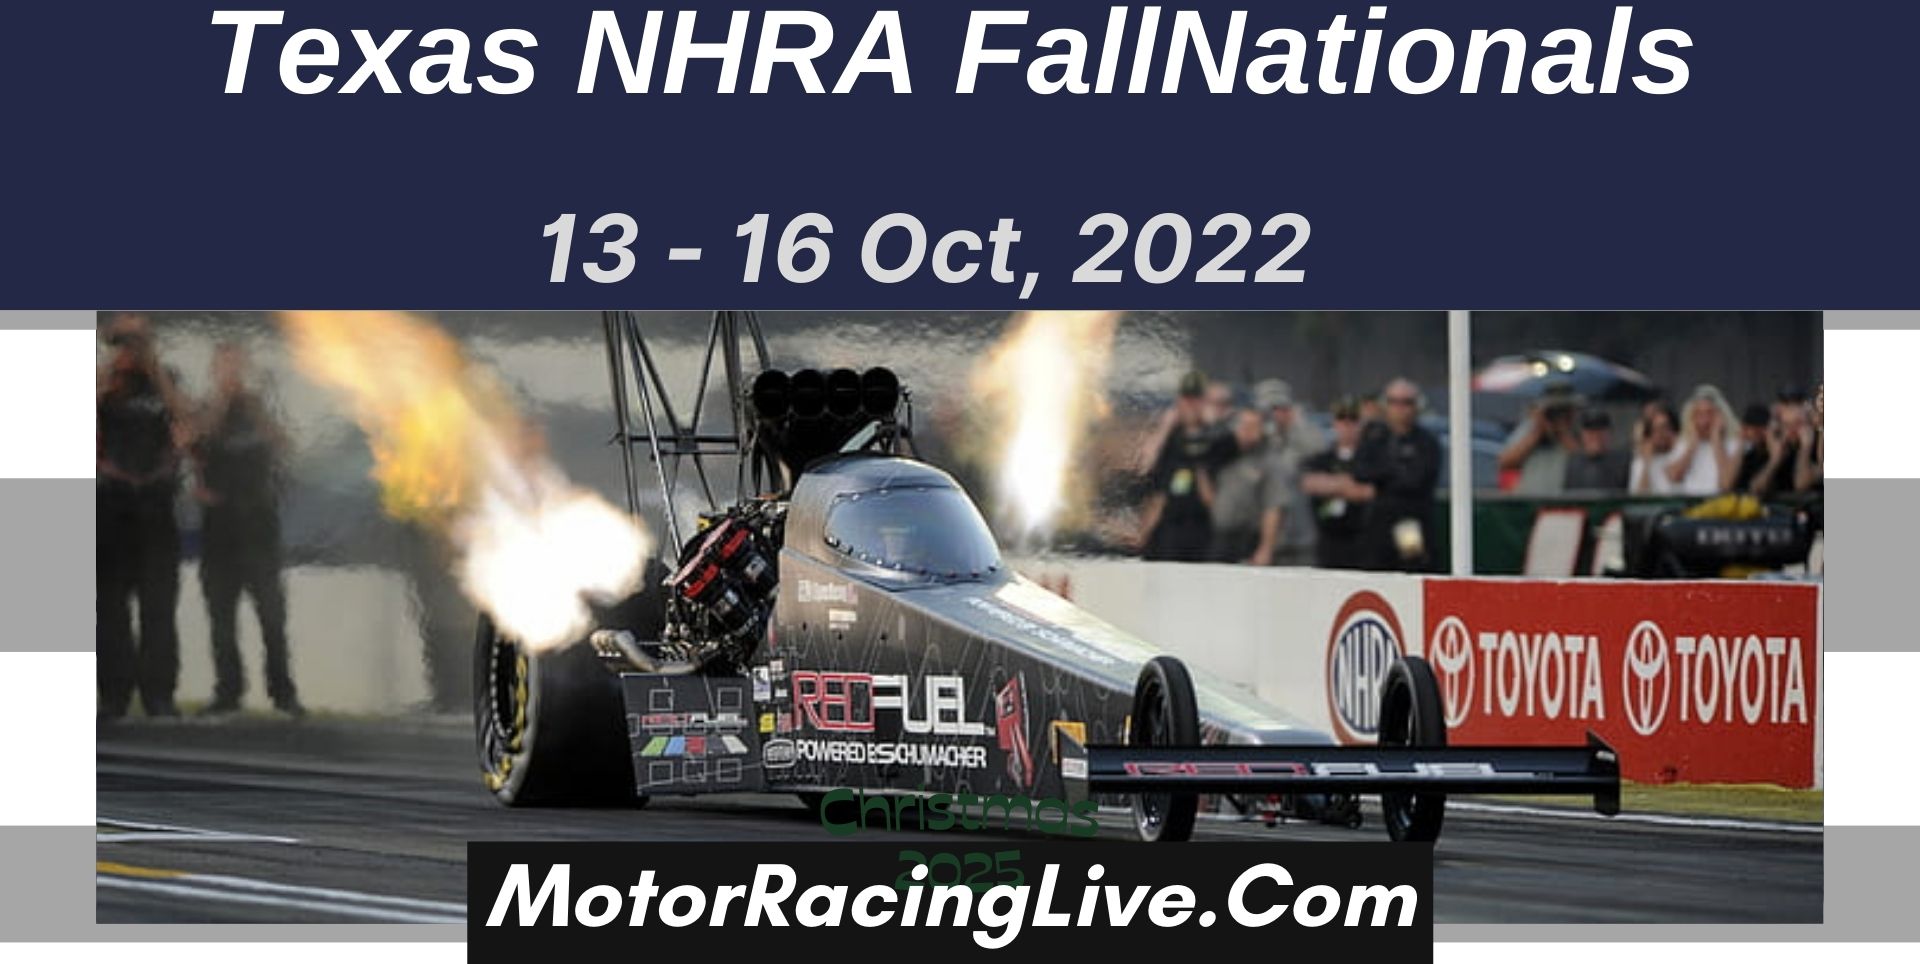 Texas NHRA FallNationals 2022 Live Stream